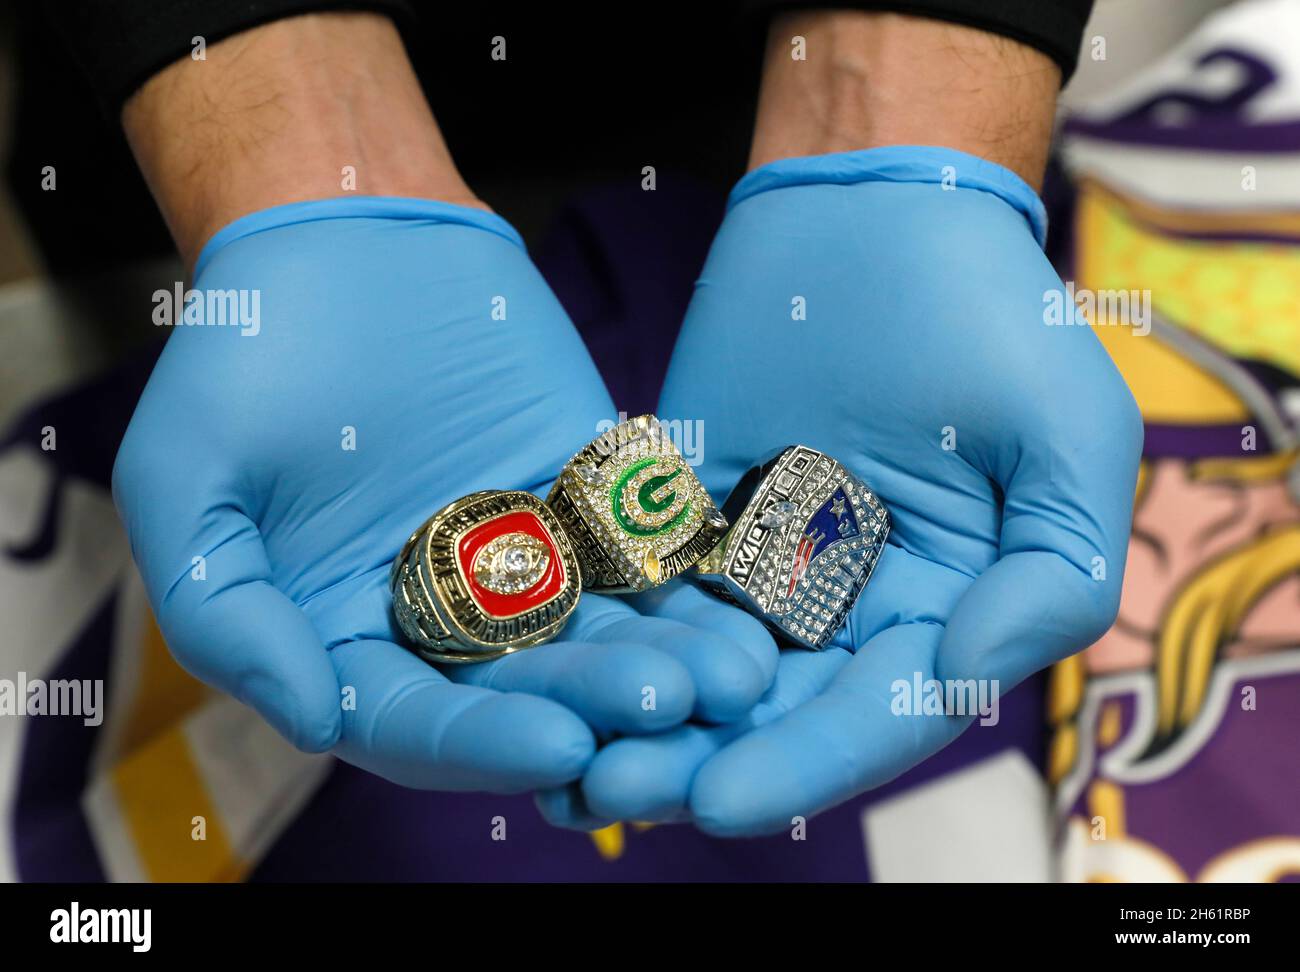 Les bagues Super Bowl contrefaites récemment confisquées reposent dans les palmiers d'un agent des opérations sur le terrain du Bureau des douanes et de la protection des frontières des États-Unis, à Minneapolis, au Minnesota, le 31 janvier 2018 Banque D'Images